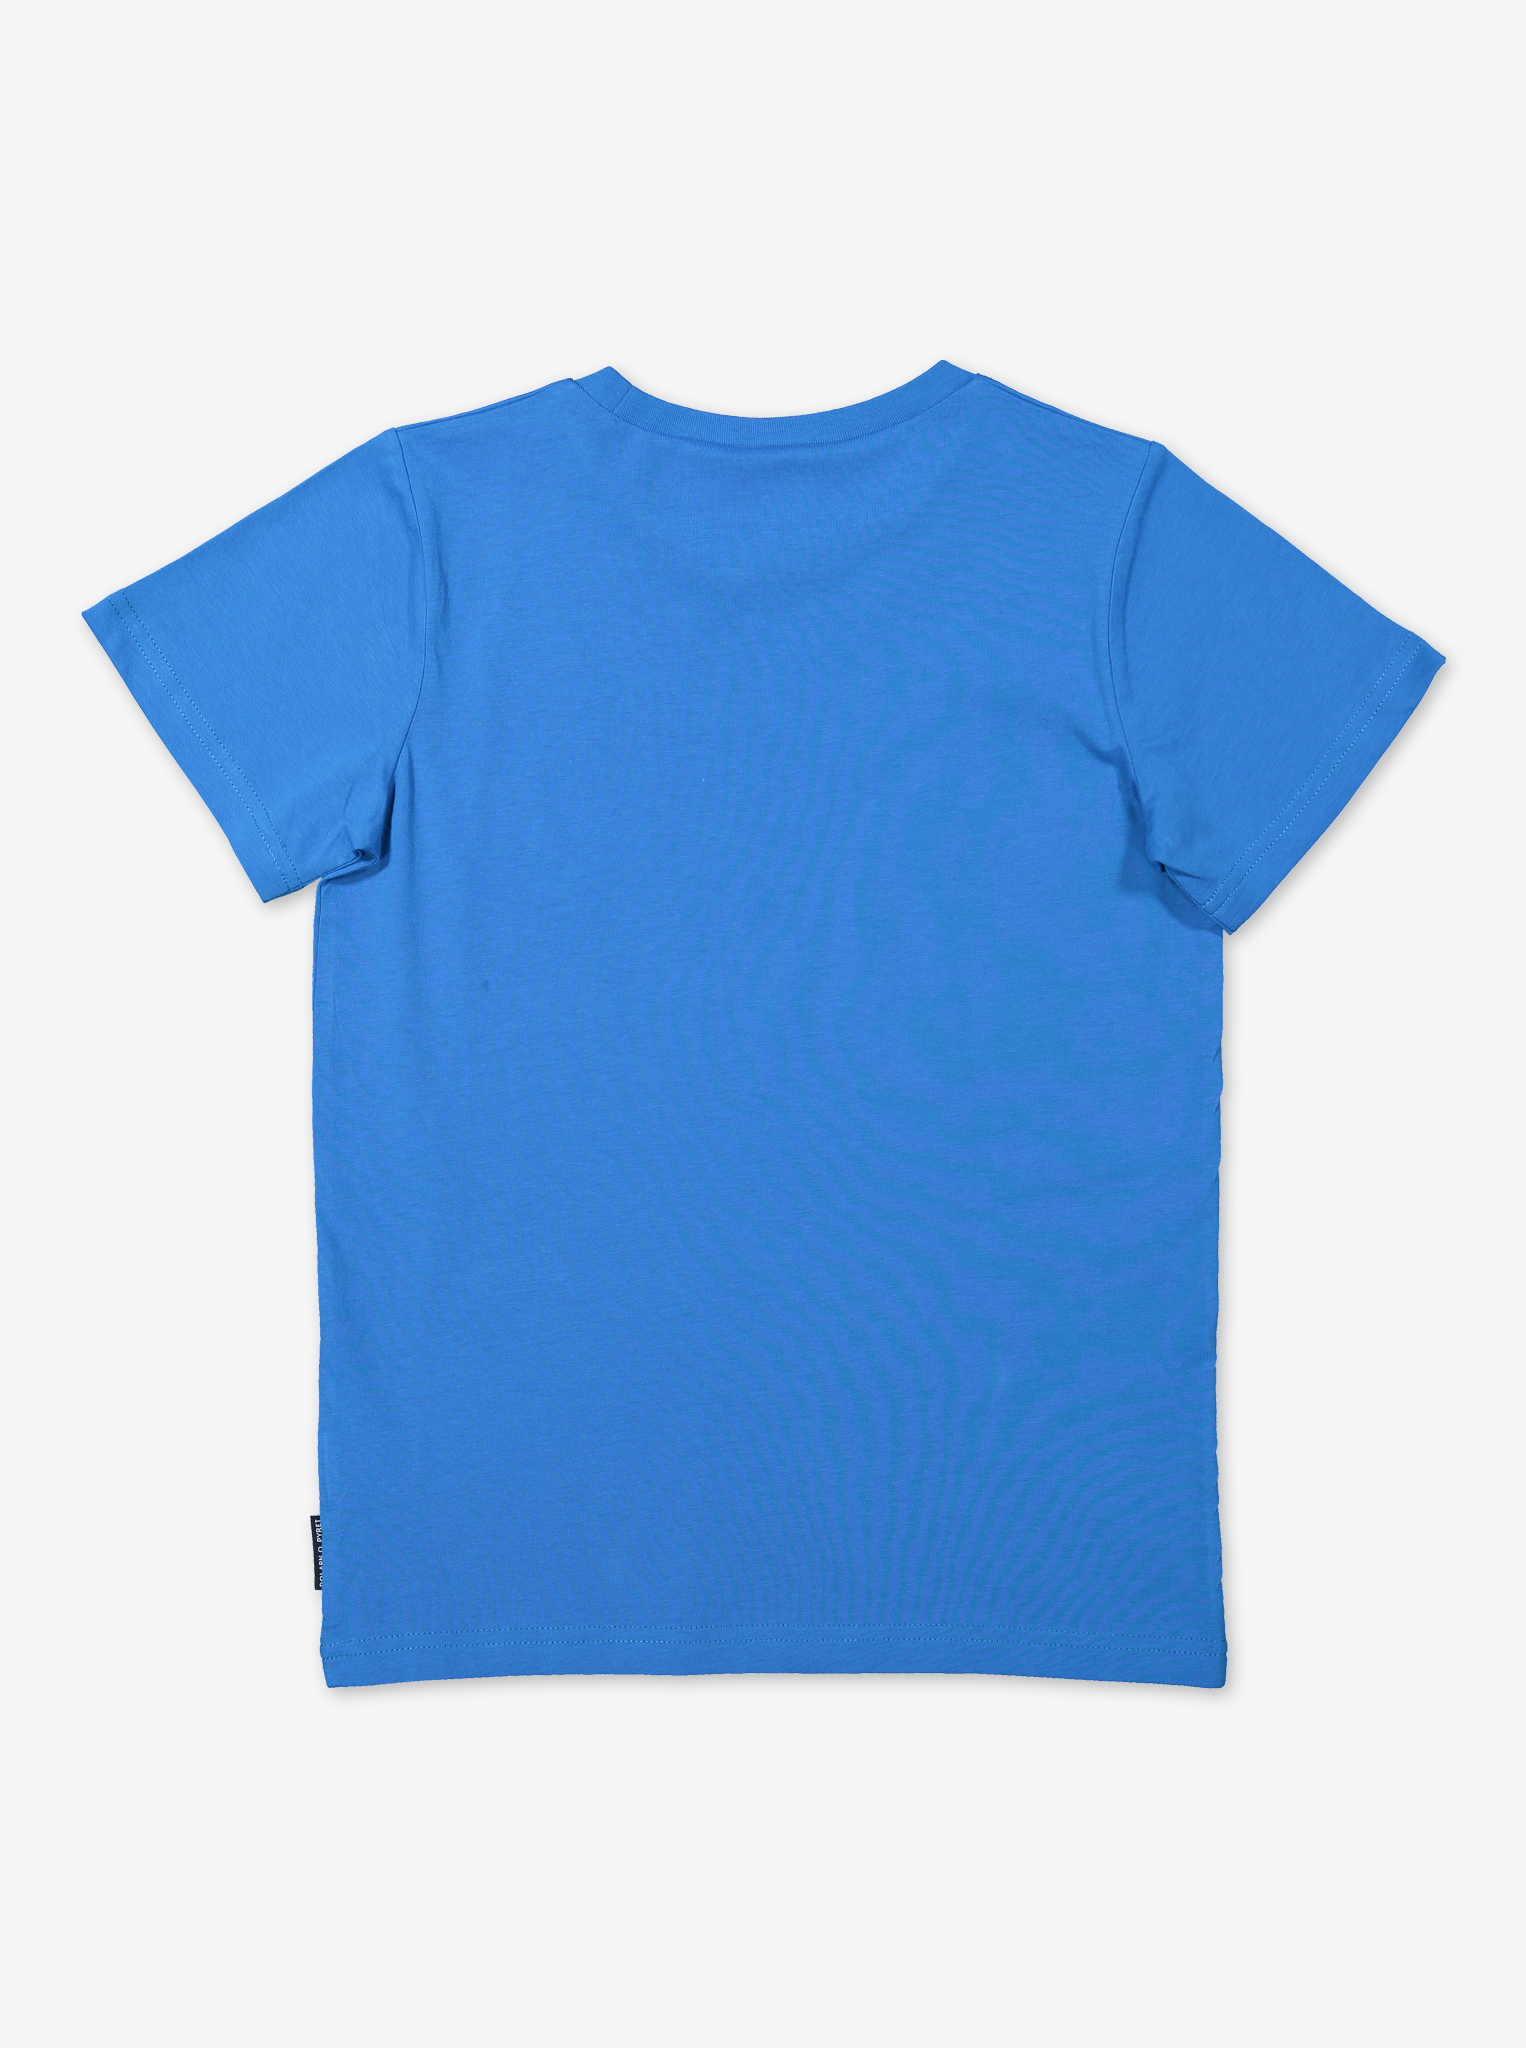 Organic Kids T-Shirt-Boy-6-12y-Blue